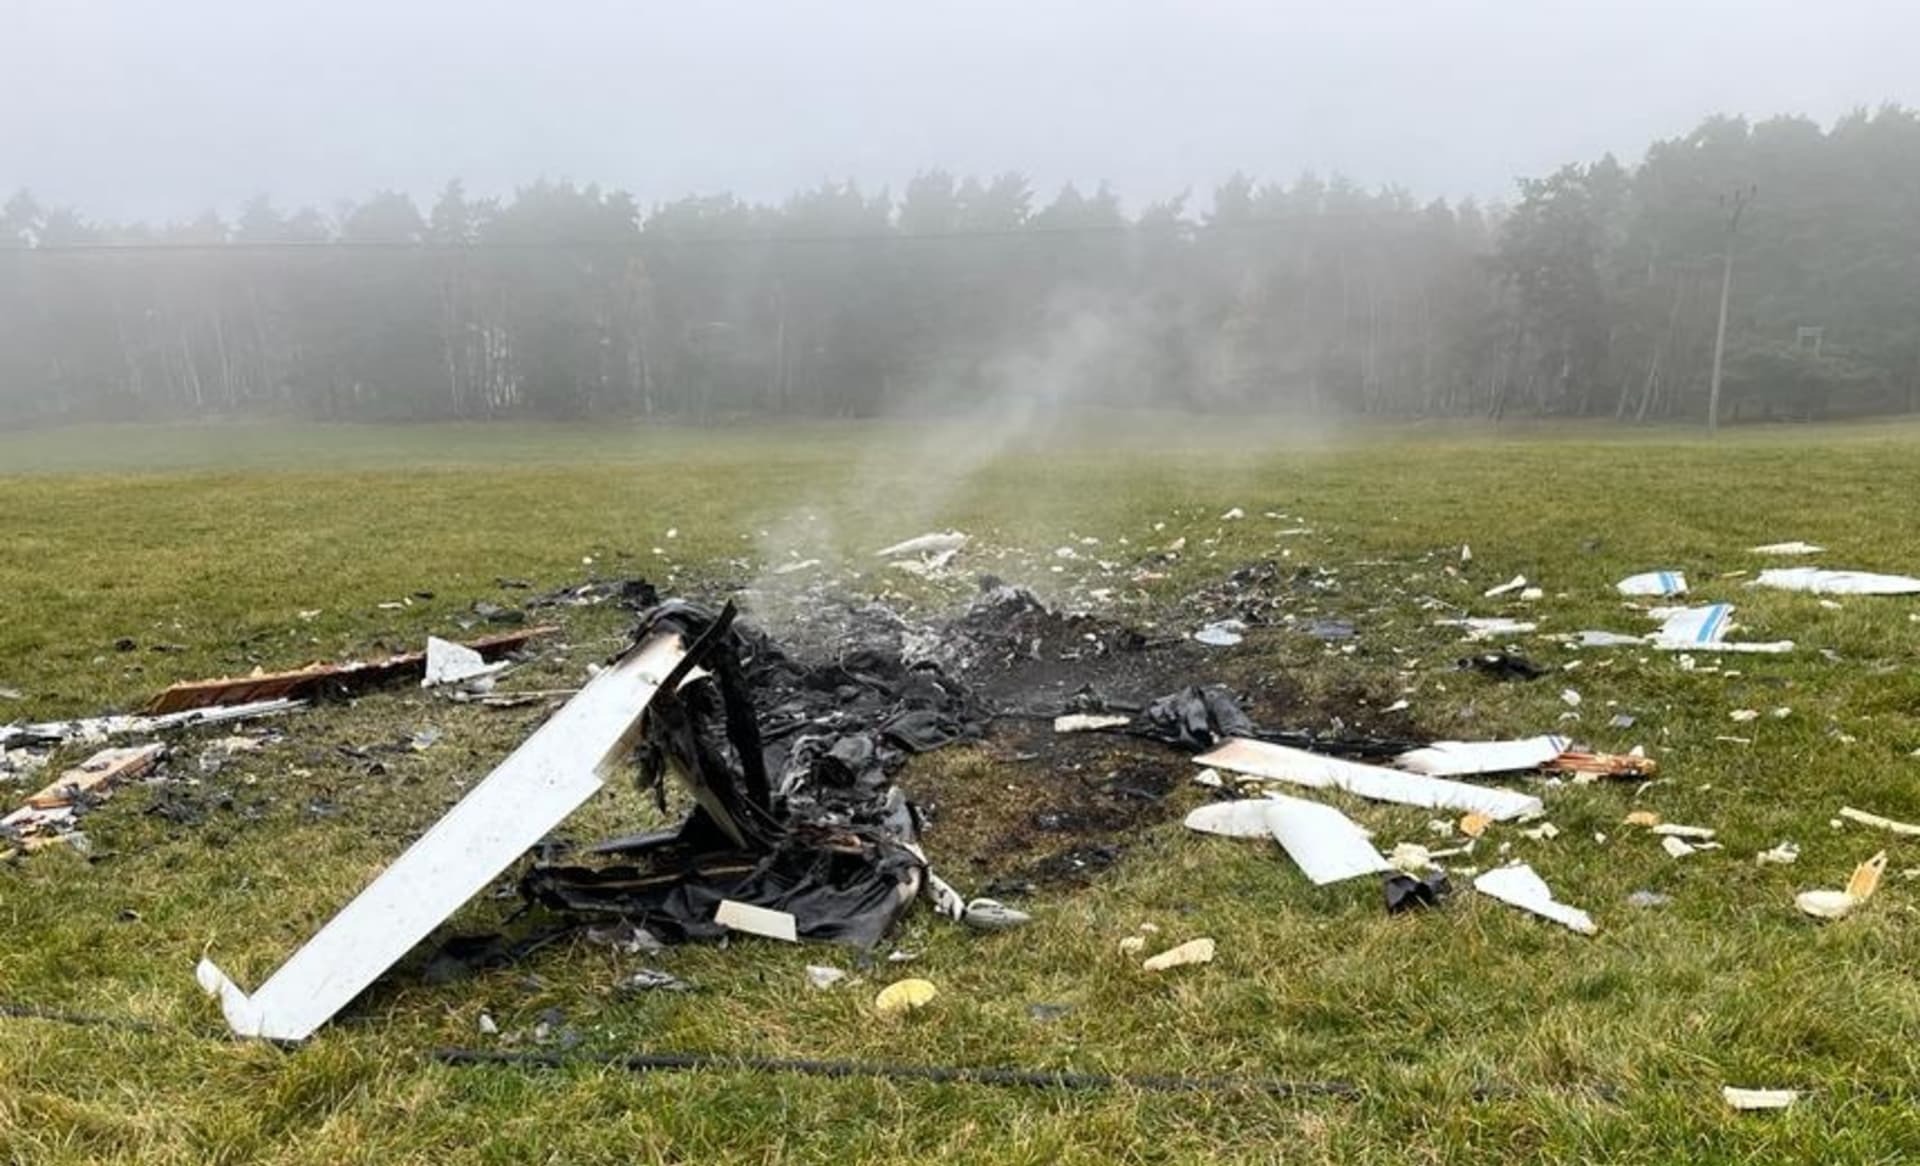 Nehoda malého letadla na Českolipsku